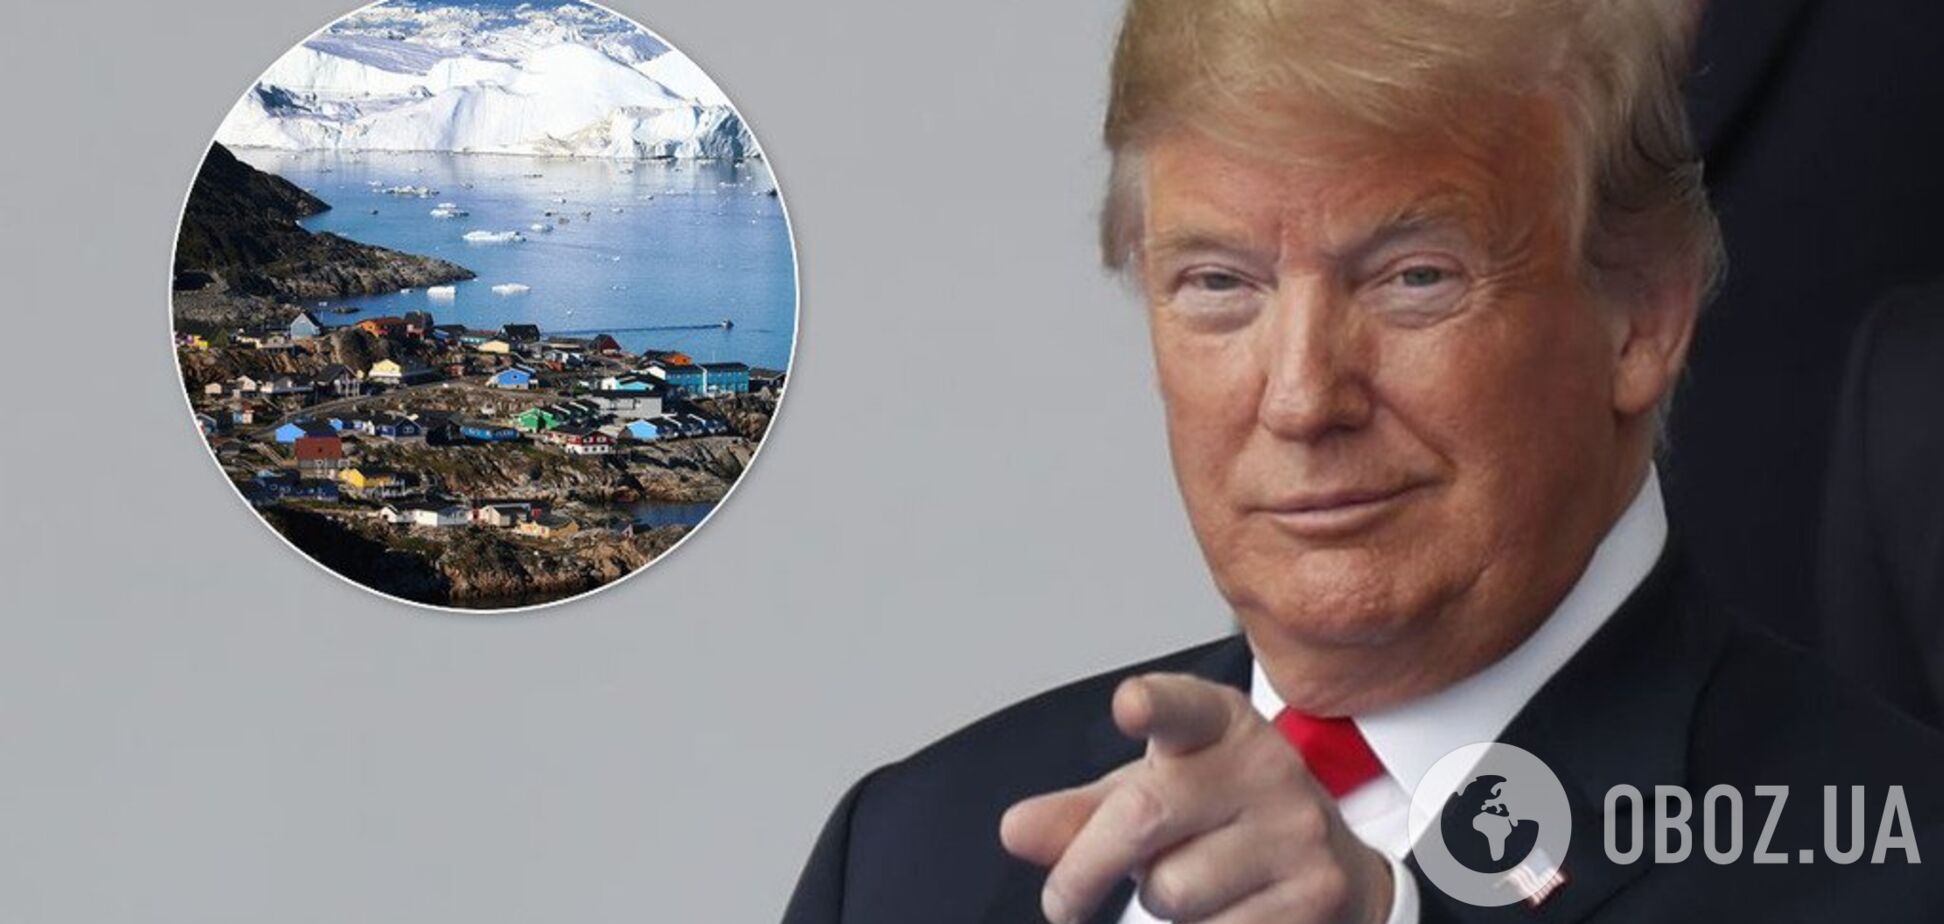 Трамп задумал купить крупнейший в мире остров: о чем речь